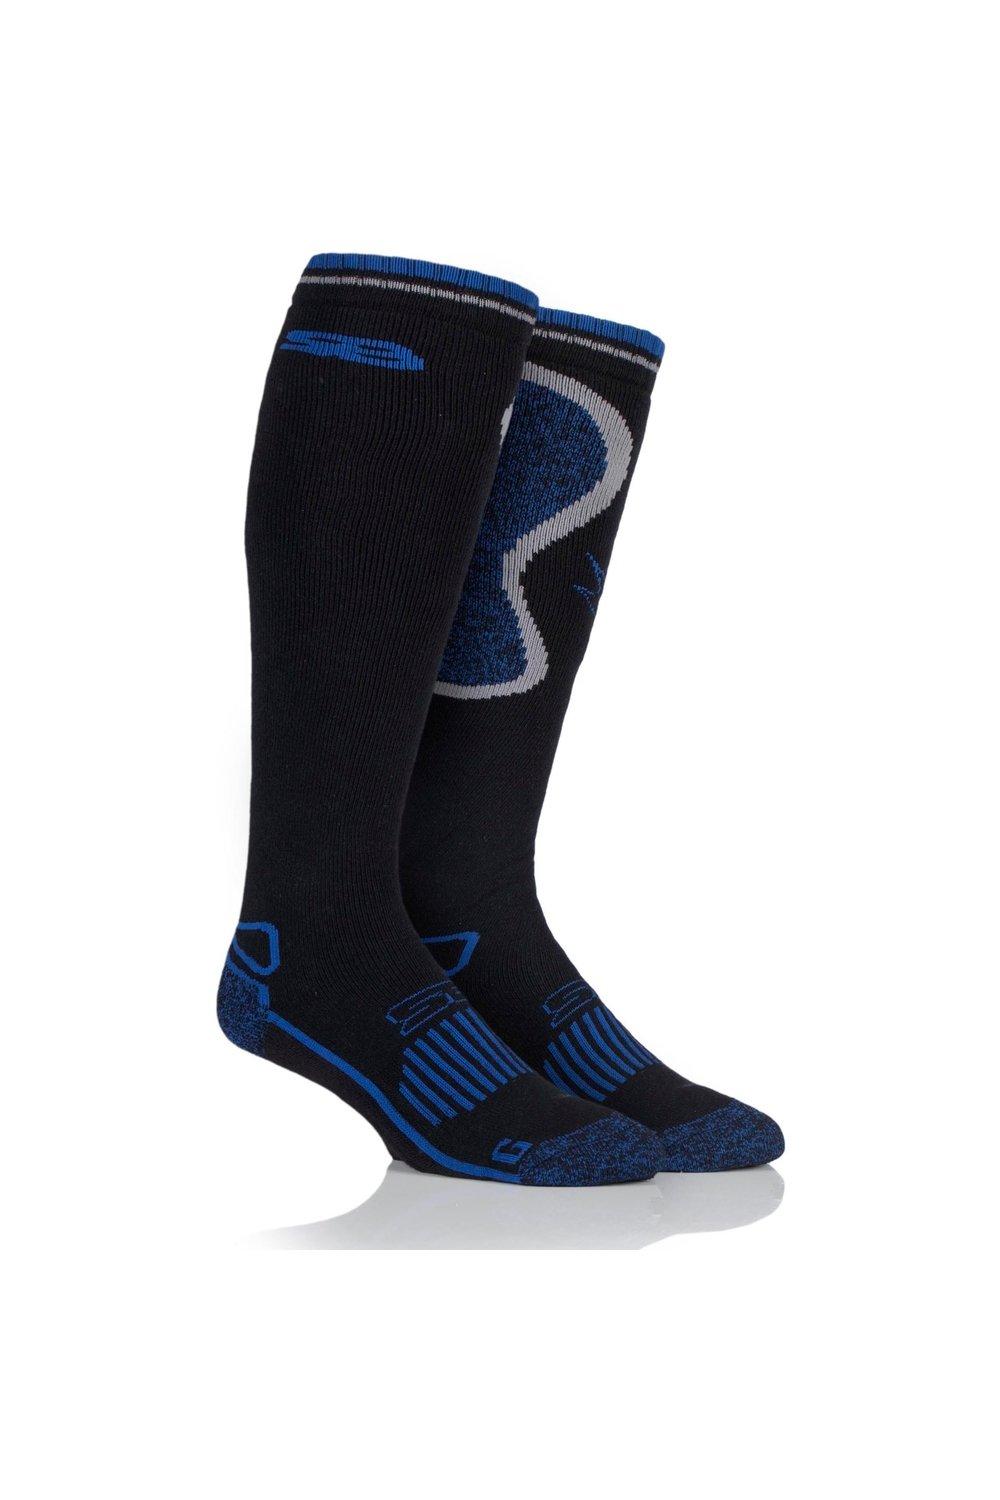 1 пара длинных носков из смесовой шерсти BlueGuard в стиле кантри SOCKSHOP Storm Bloc, черный